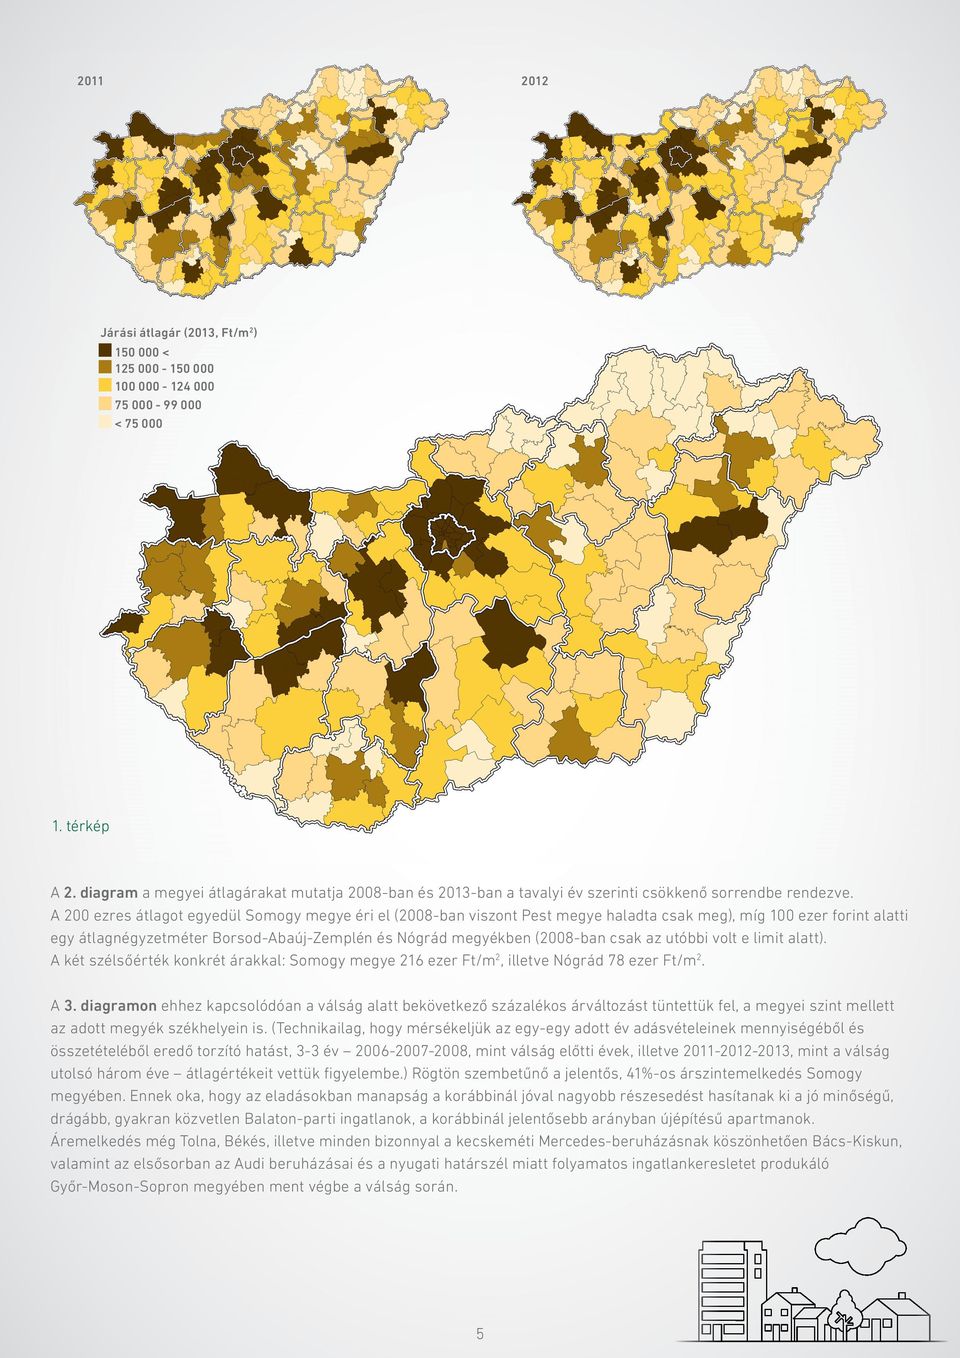 A 200 ezres átlagot egyedül Somogy megye éri el (2008-ban viszont Pest megye haladta csak meg), míg 100 ezer forint alatti egy átlagnégyzetméter Borsod-Abaúj-Zemplén és Nógrád megyékben (2008-ban